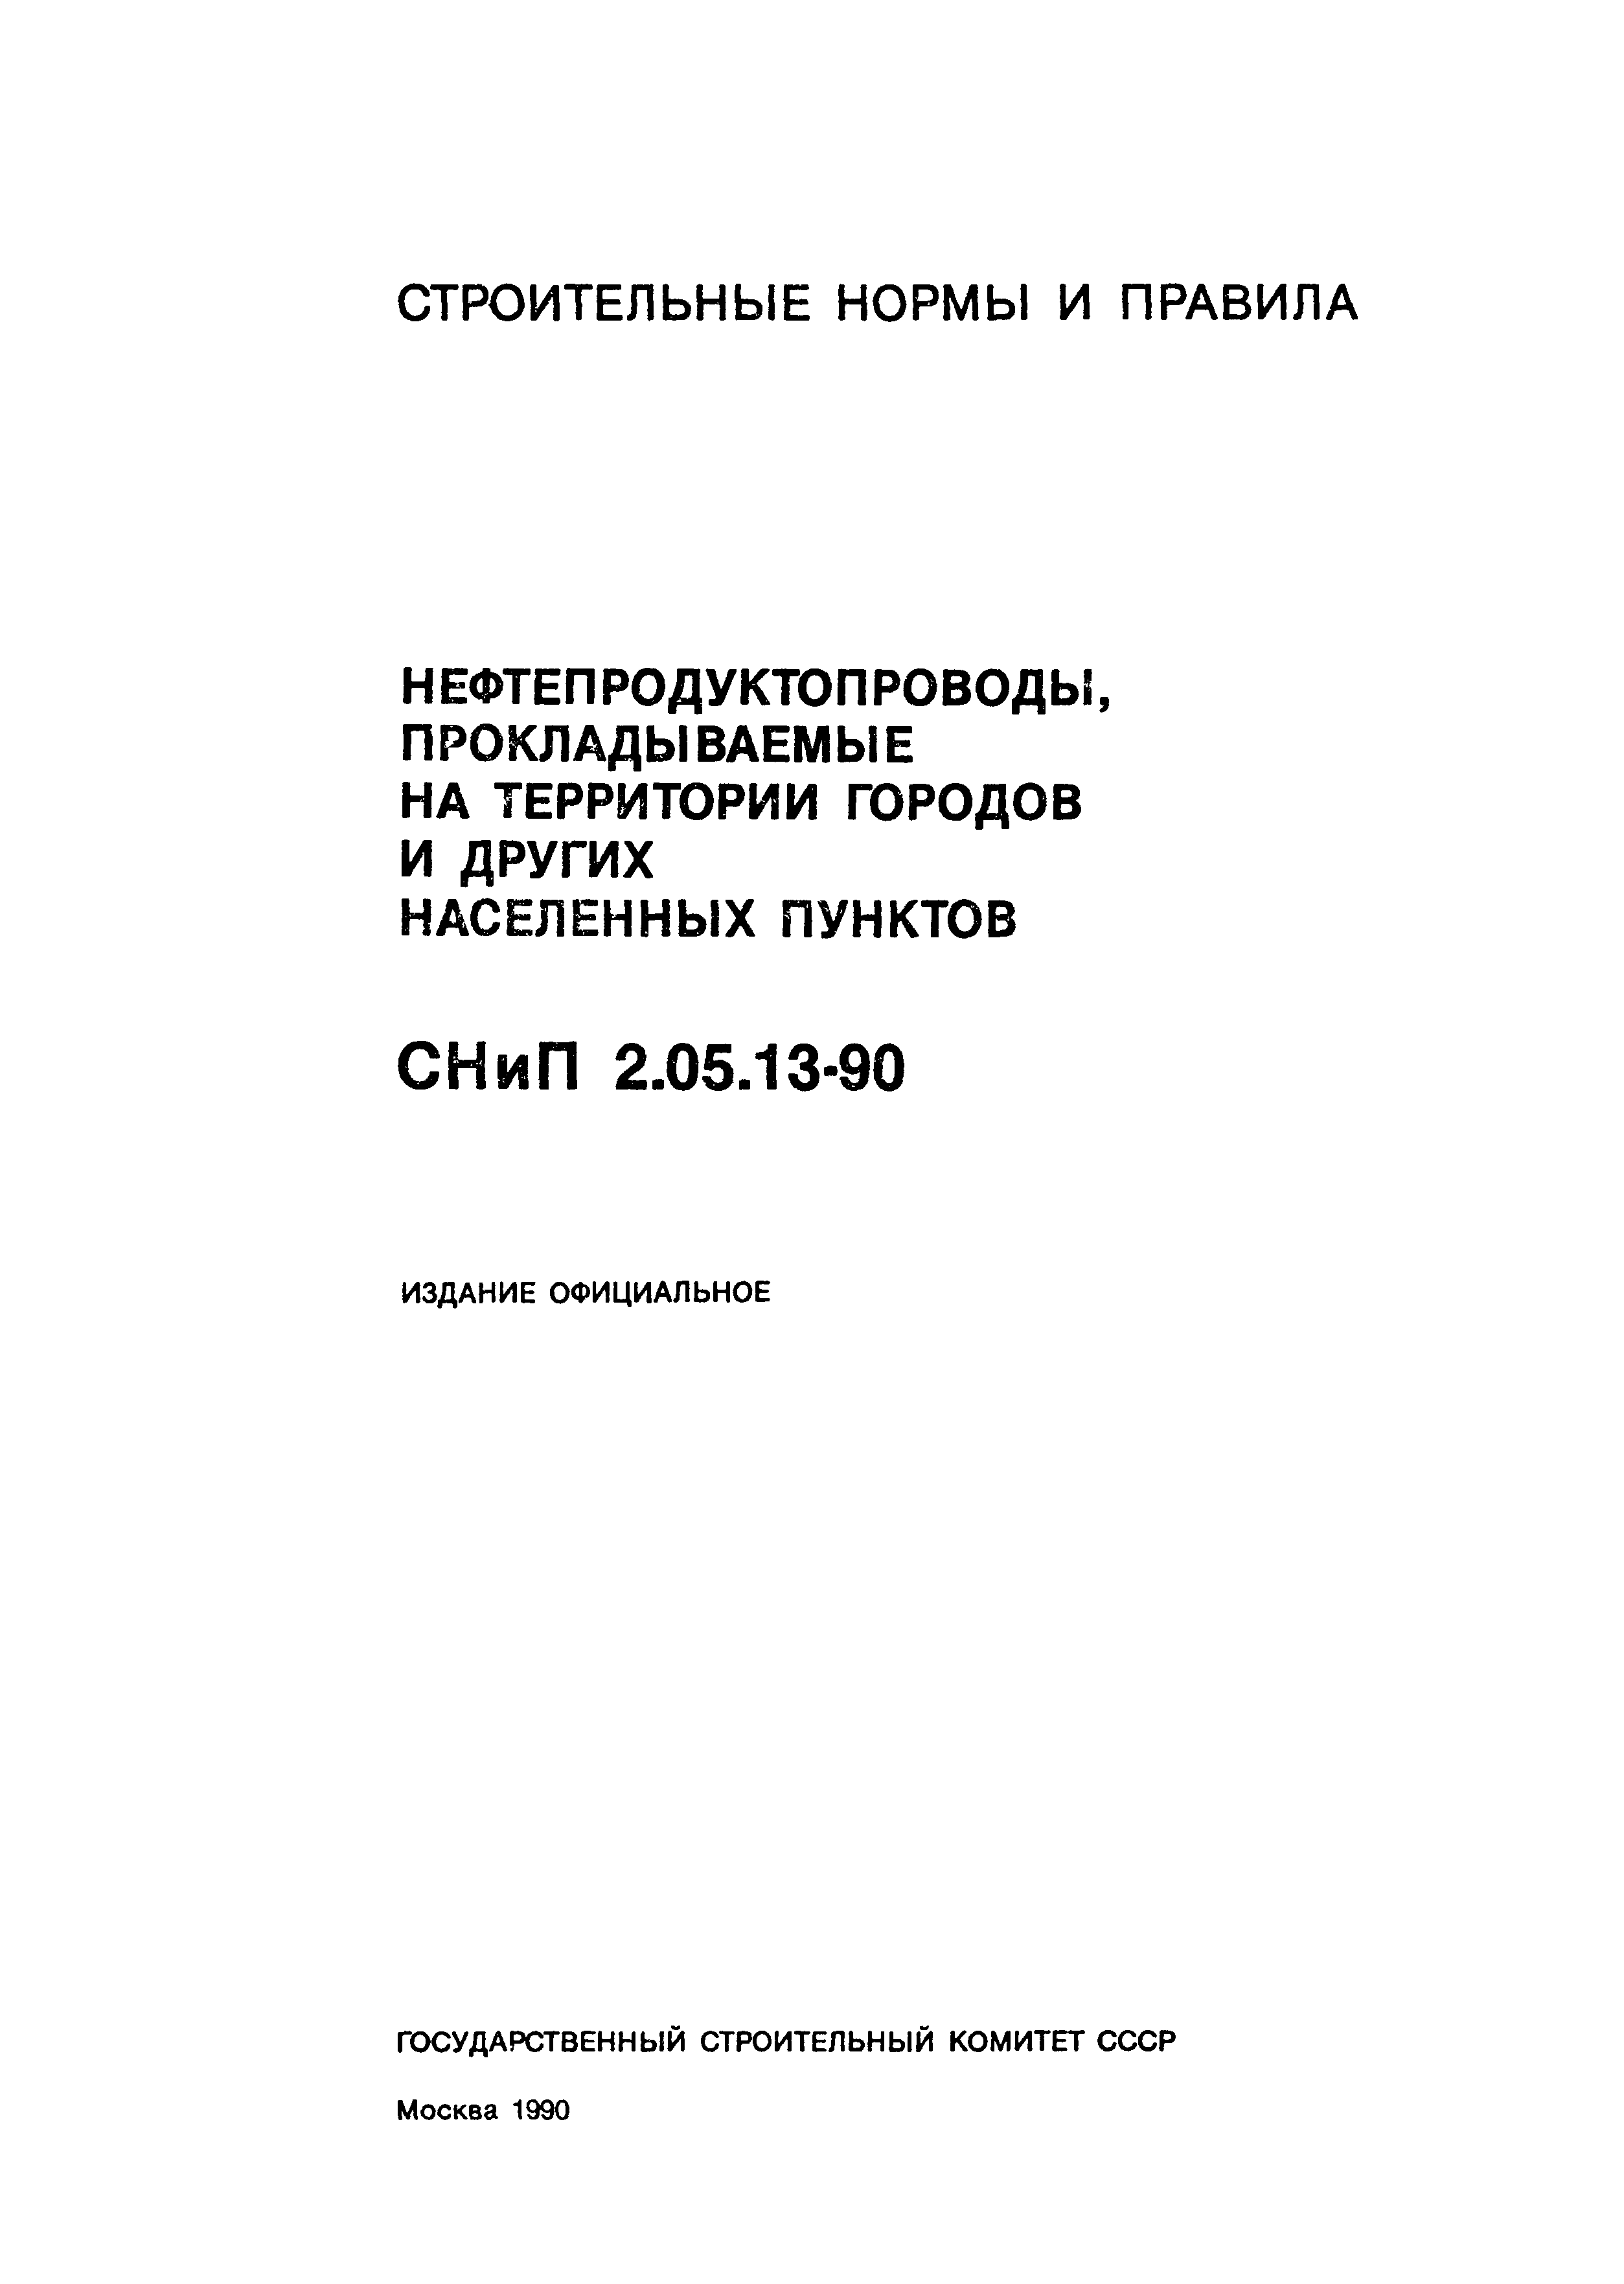 СНиП 2.05.13-90